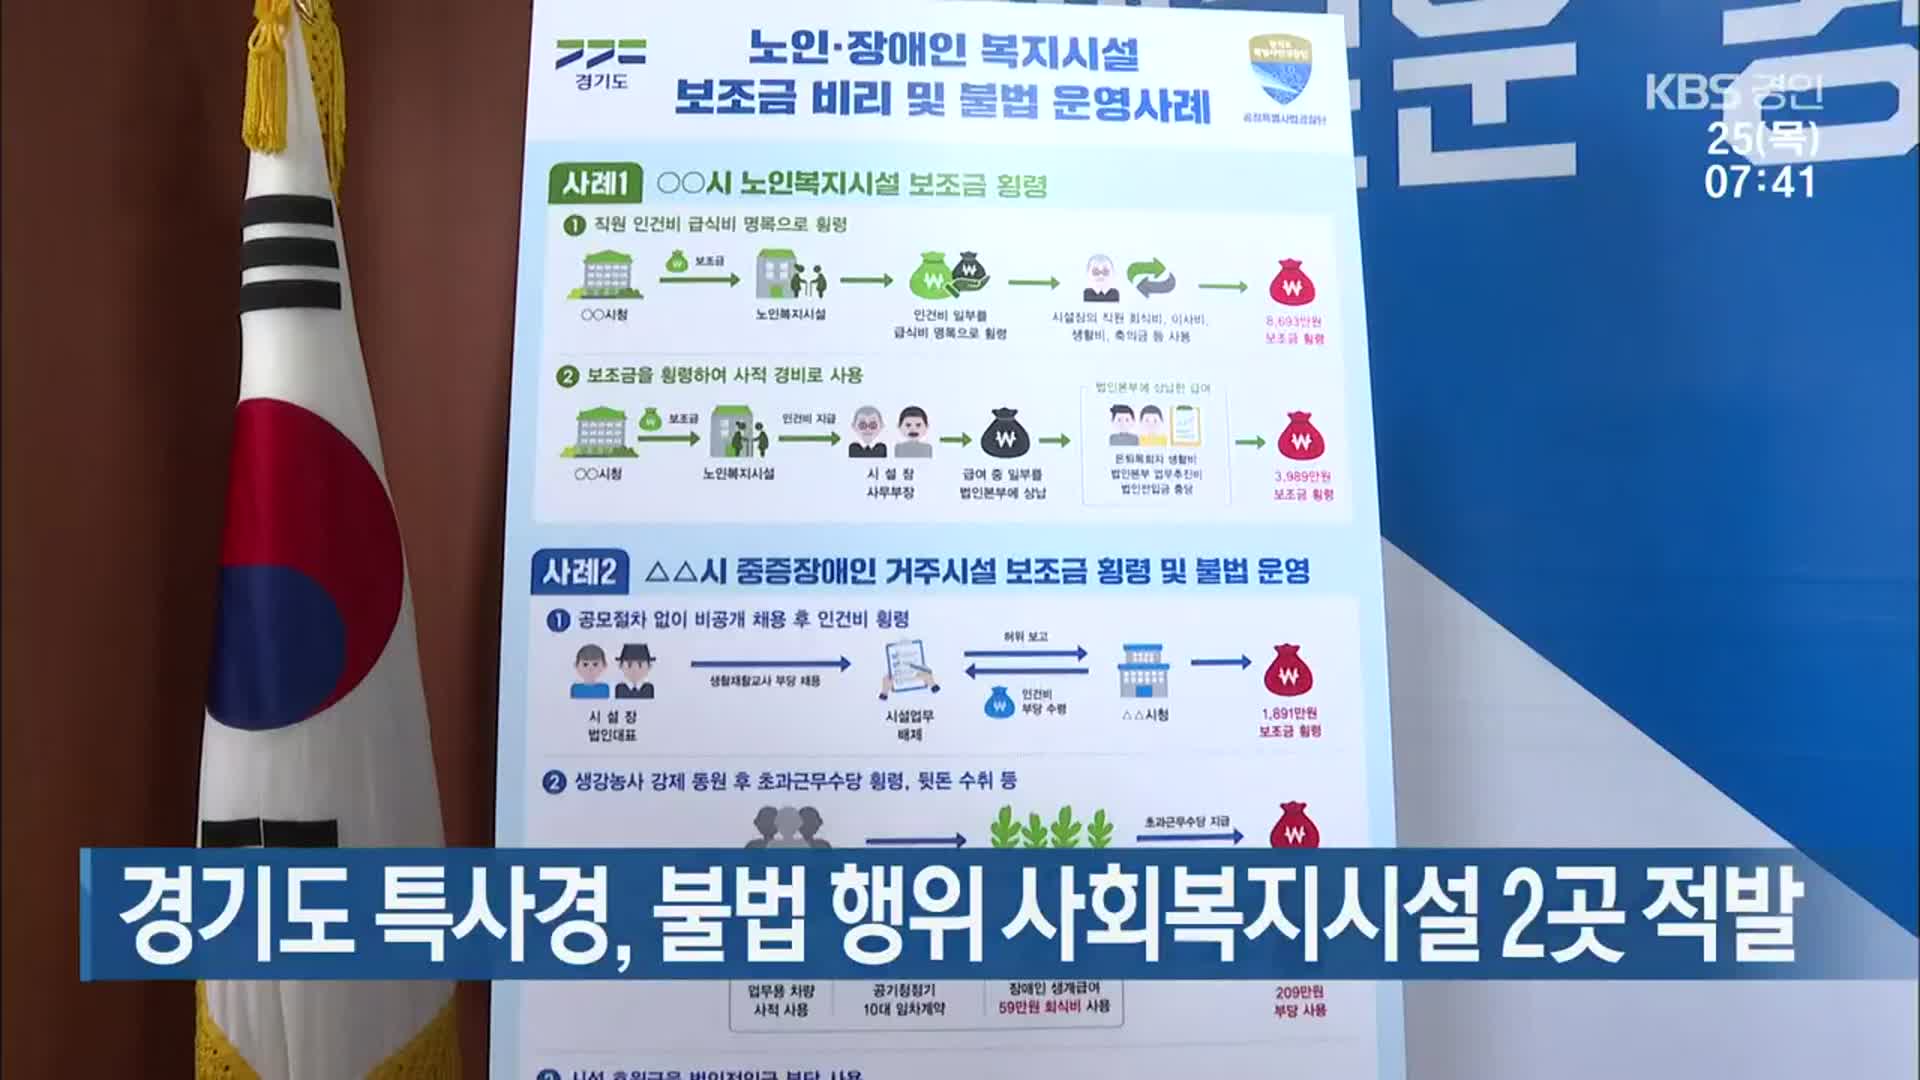 경기도 특사경, 불법 행위 사회복지시설 2곳 적발